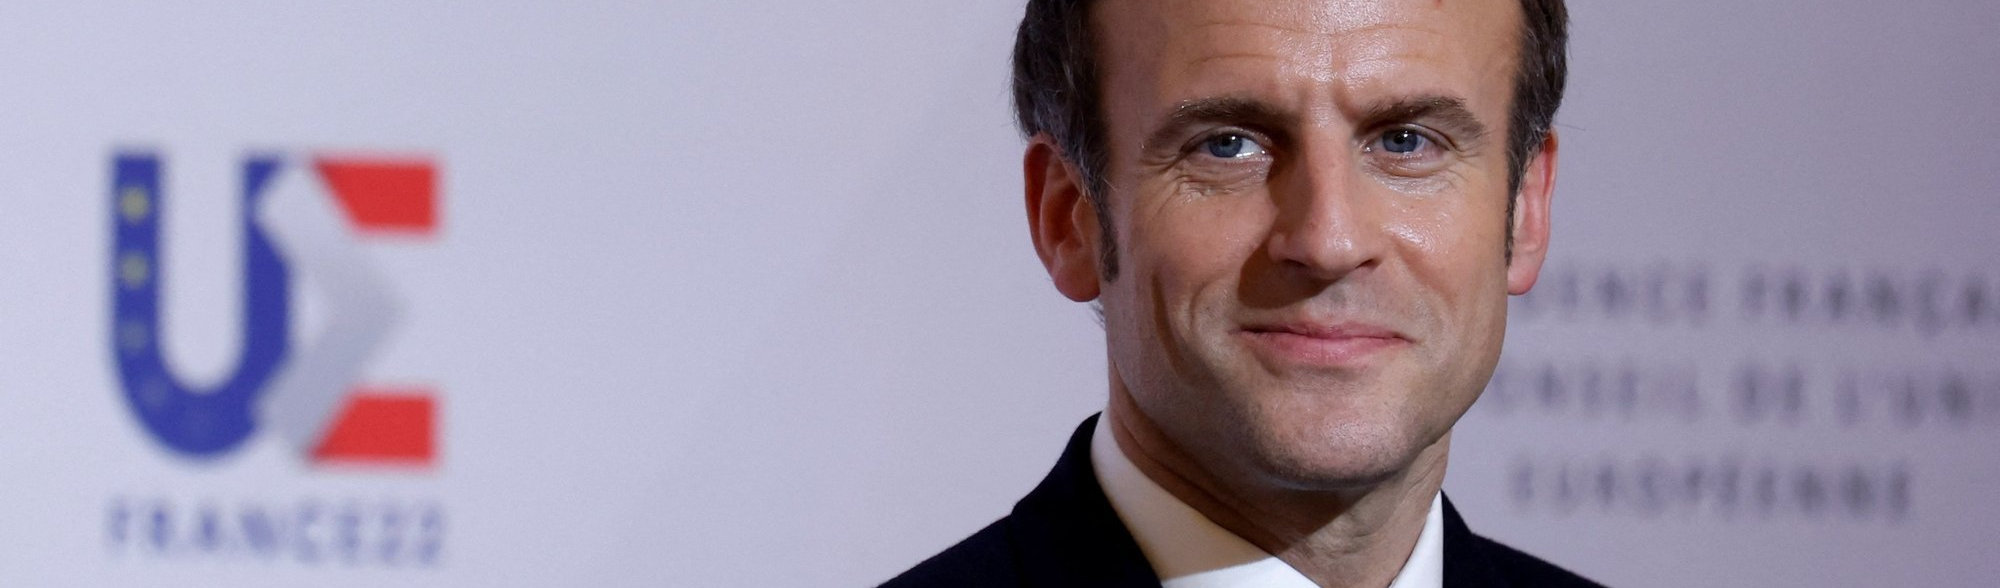 França: Macron é favorito, Le Pen aparece em segundo e esquerda não decola na corrida à presidência